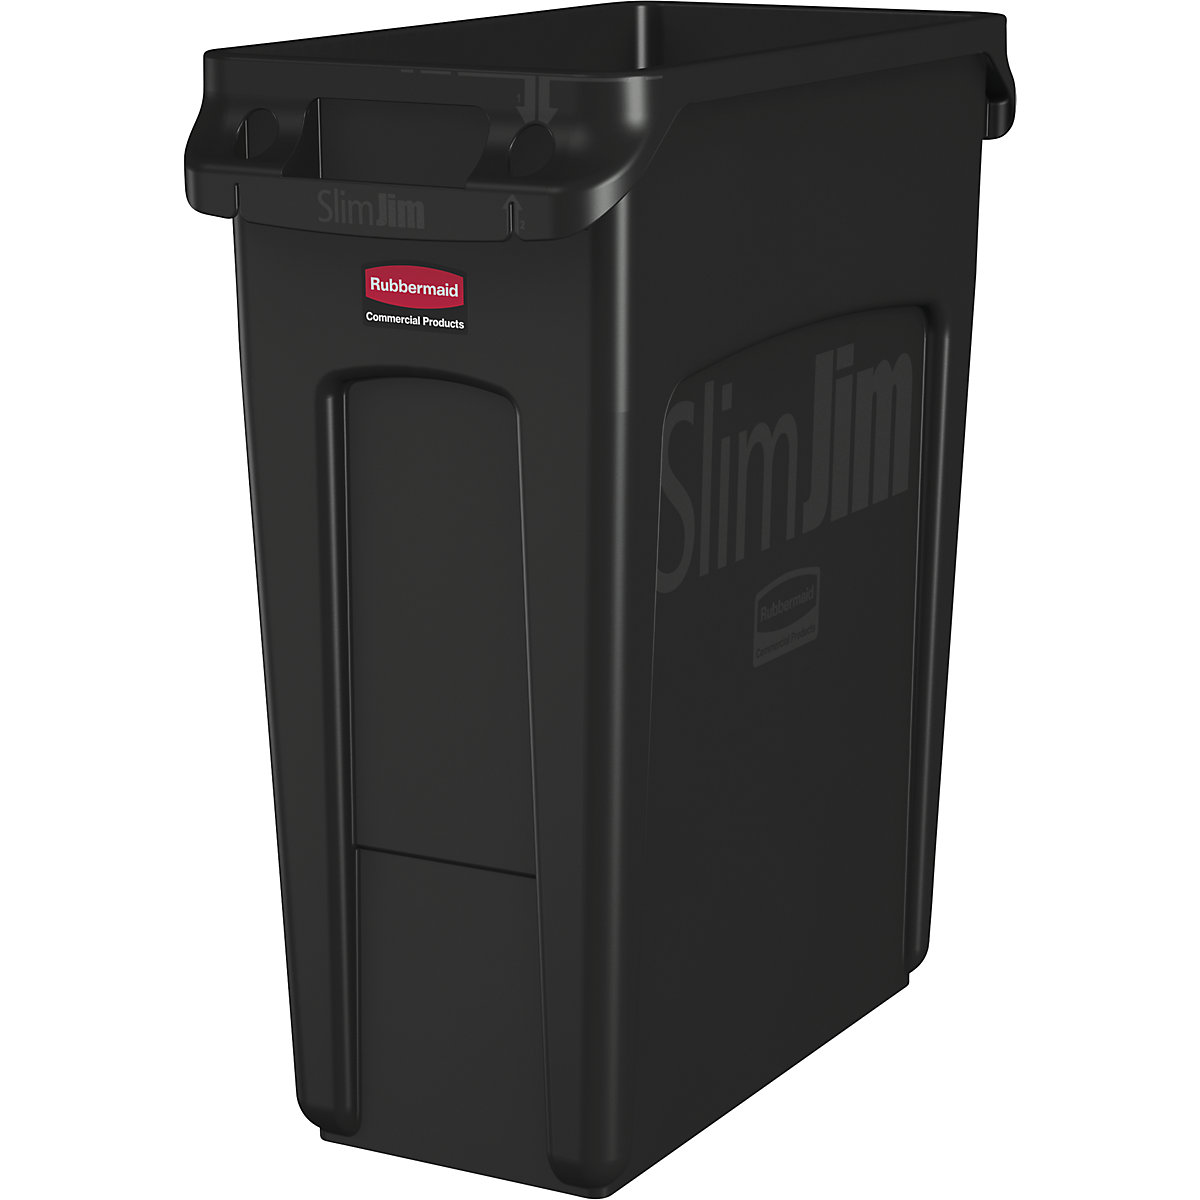 Zberač druhotných surovín/nádoba na odpad SLIM JIM® – Rubbermaid, objem 87 l, s vetracími kanálmi, čierna-14